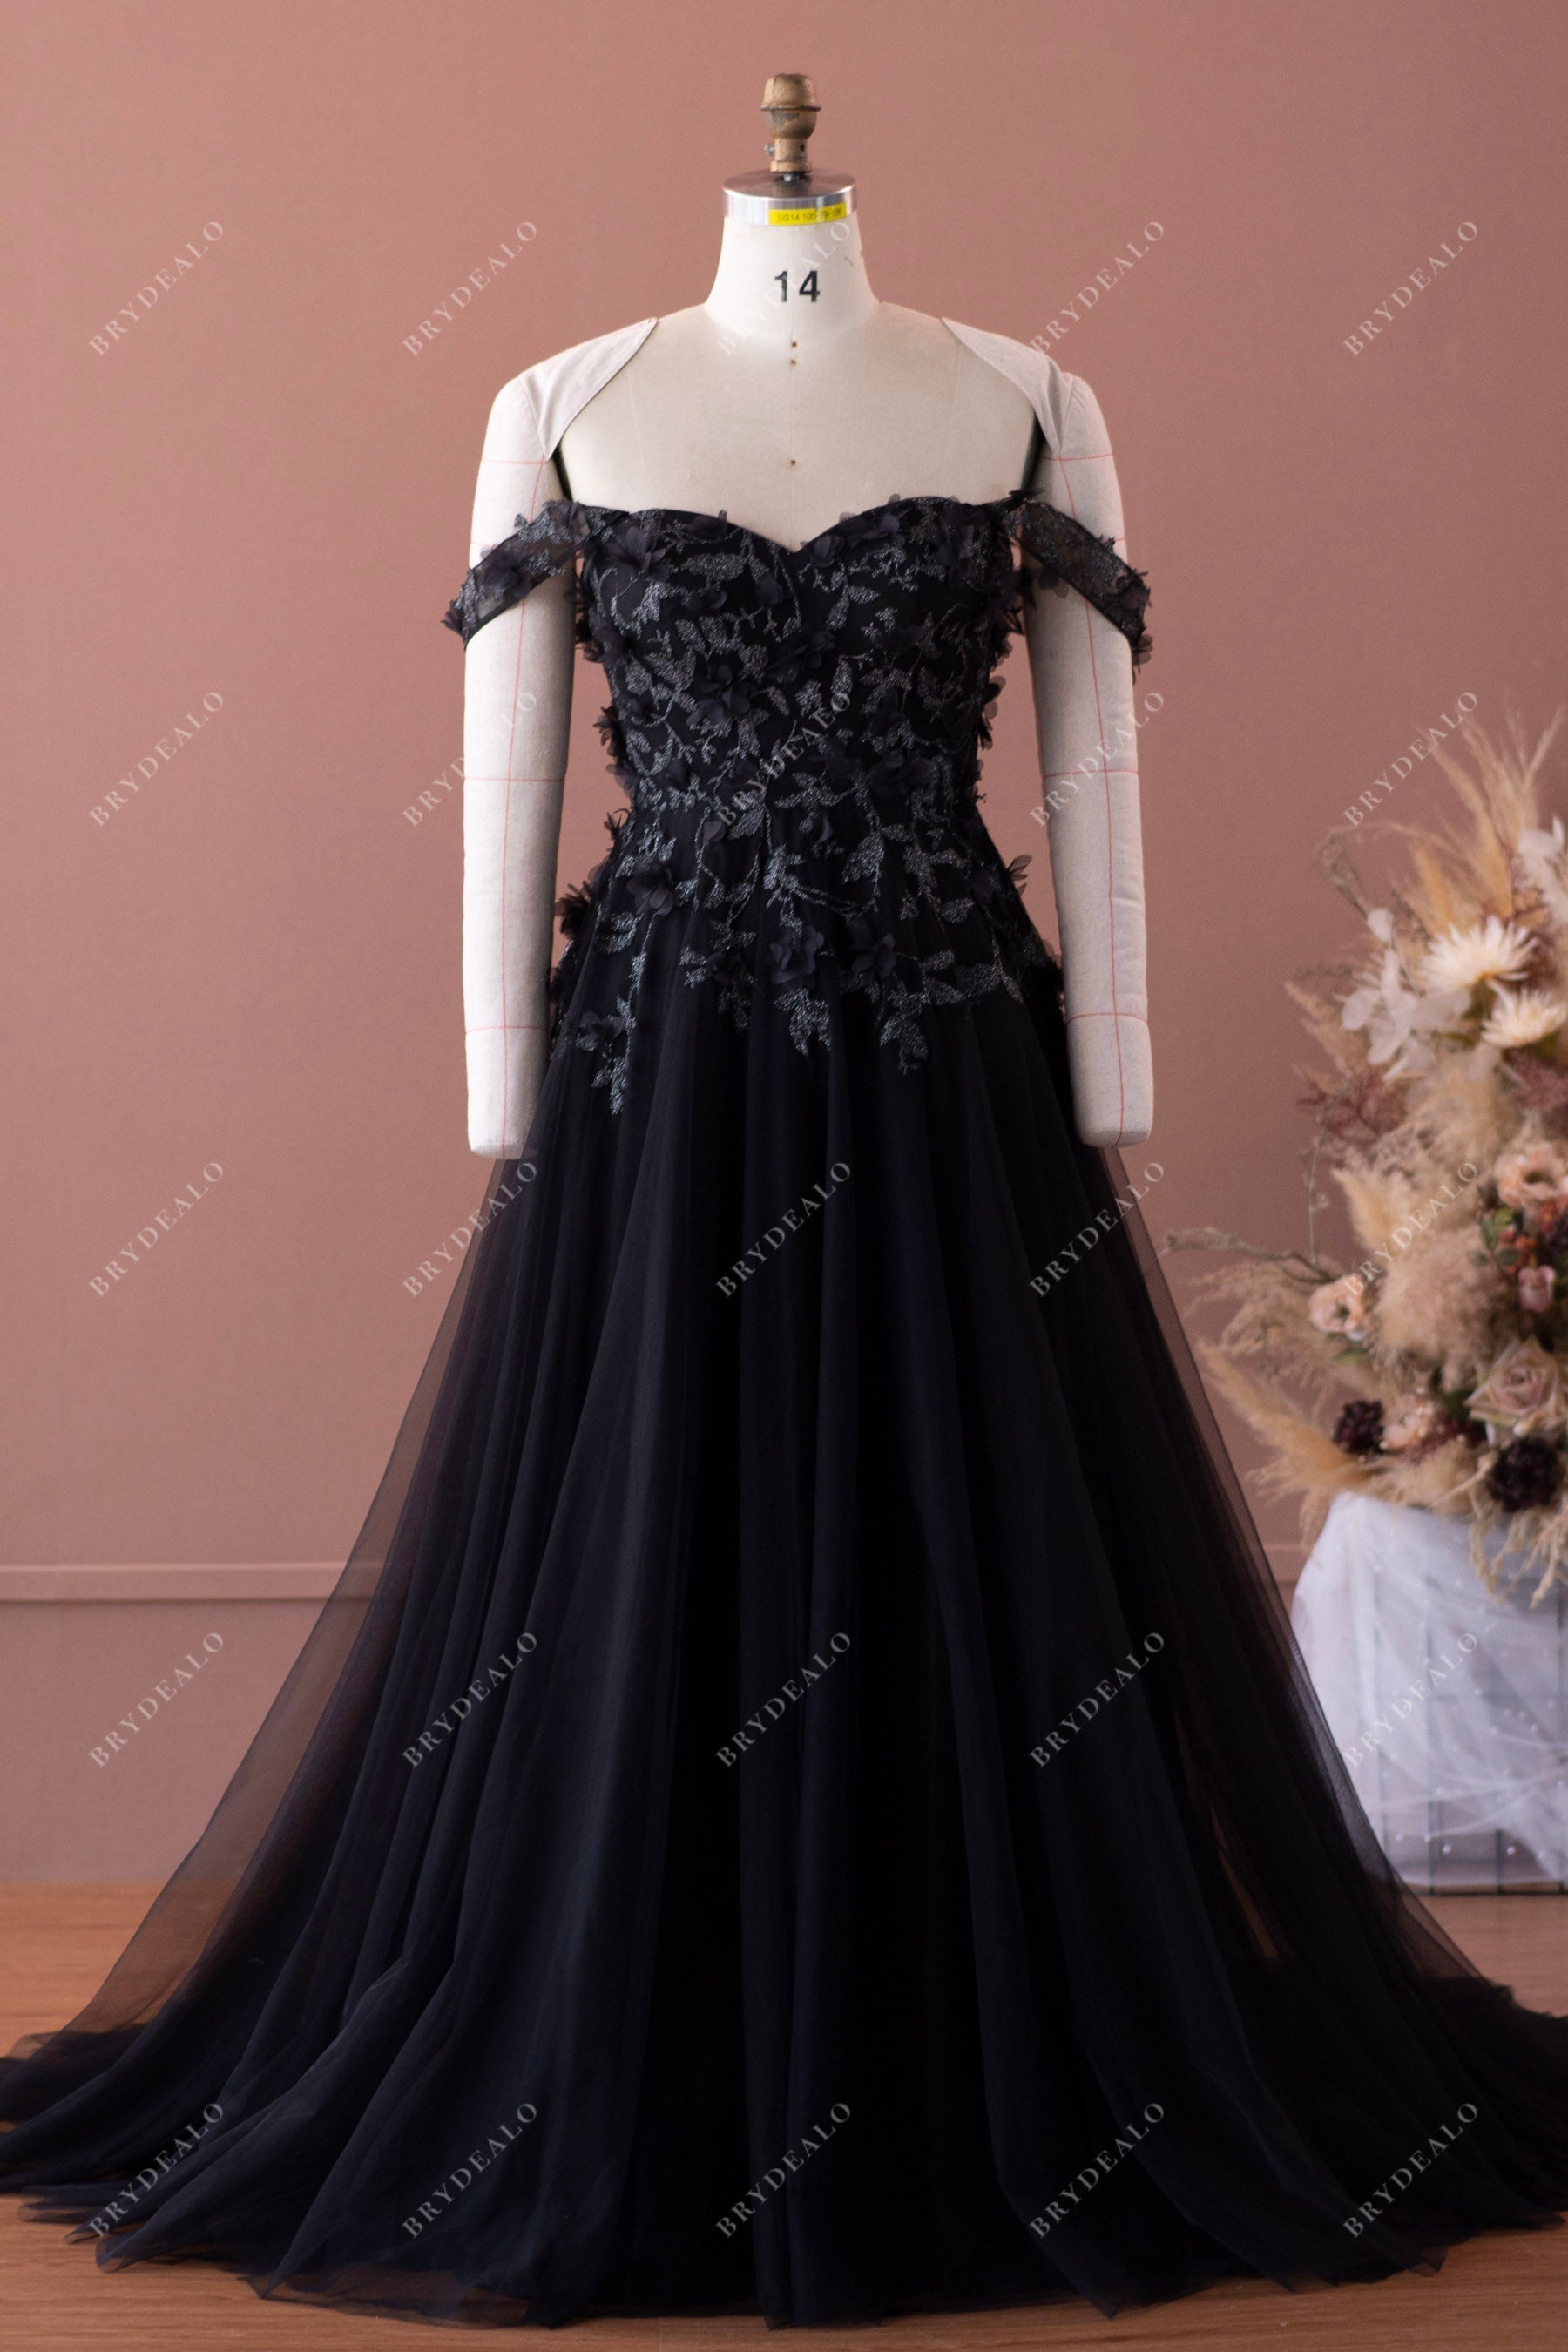 Black off-shoulder sweetheart neck flower tulle wedding dress